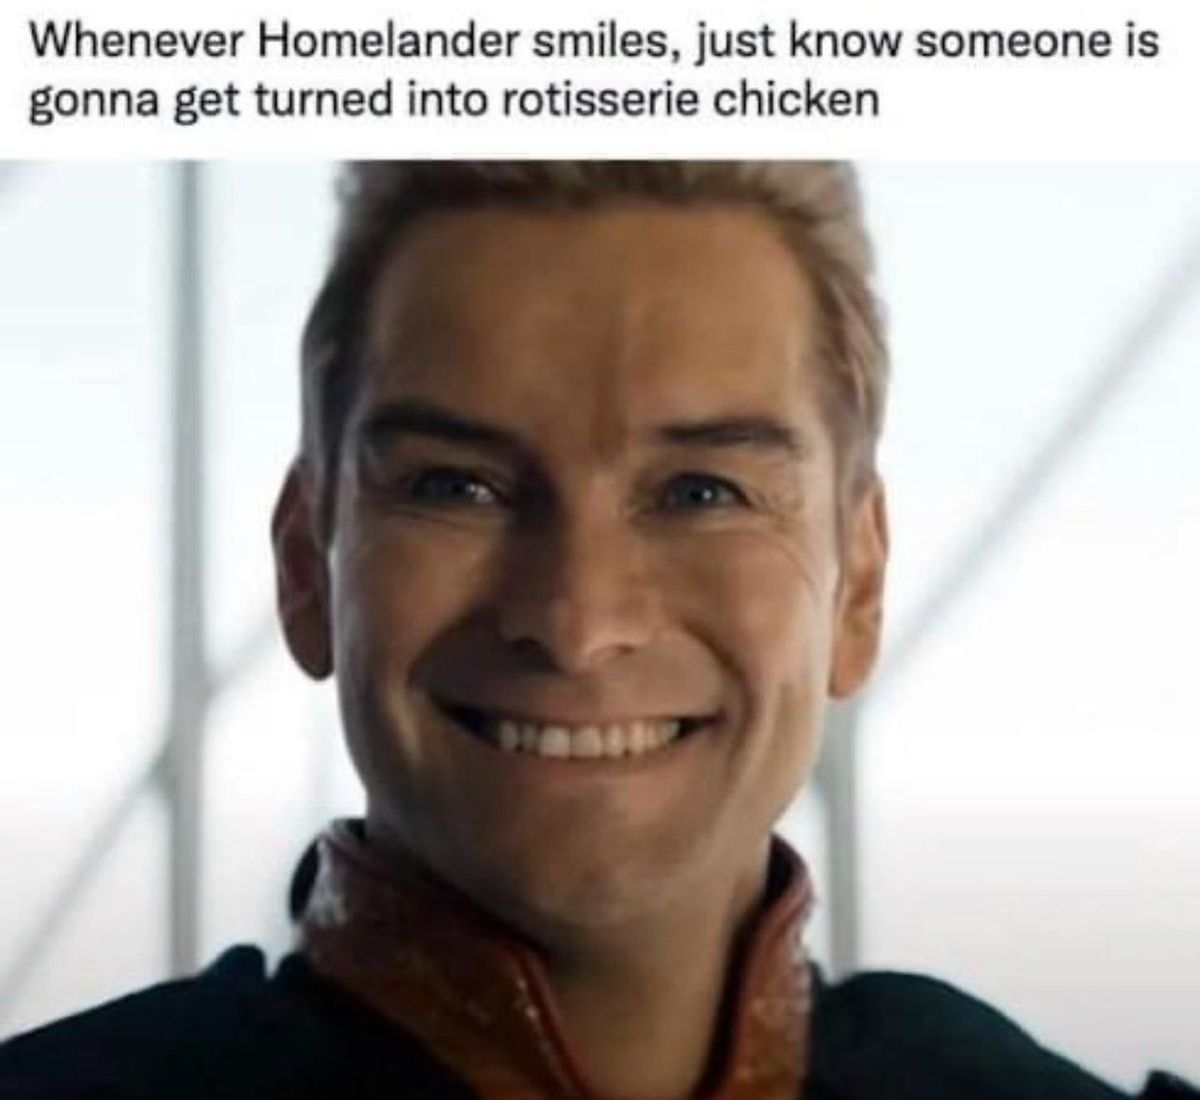 Homelander smiling meme